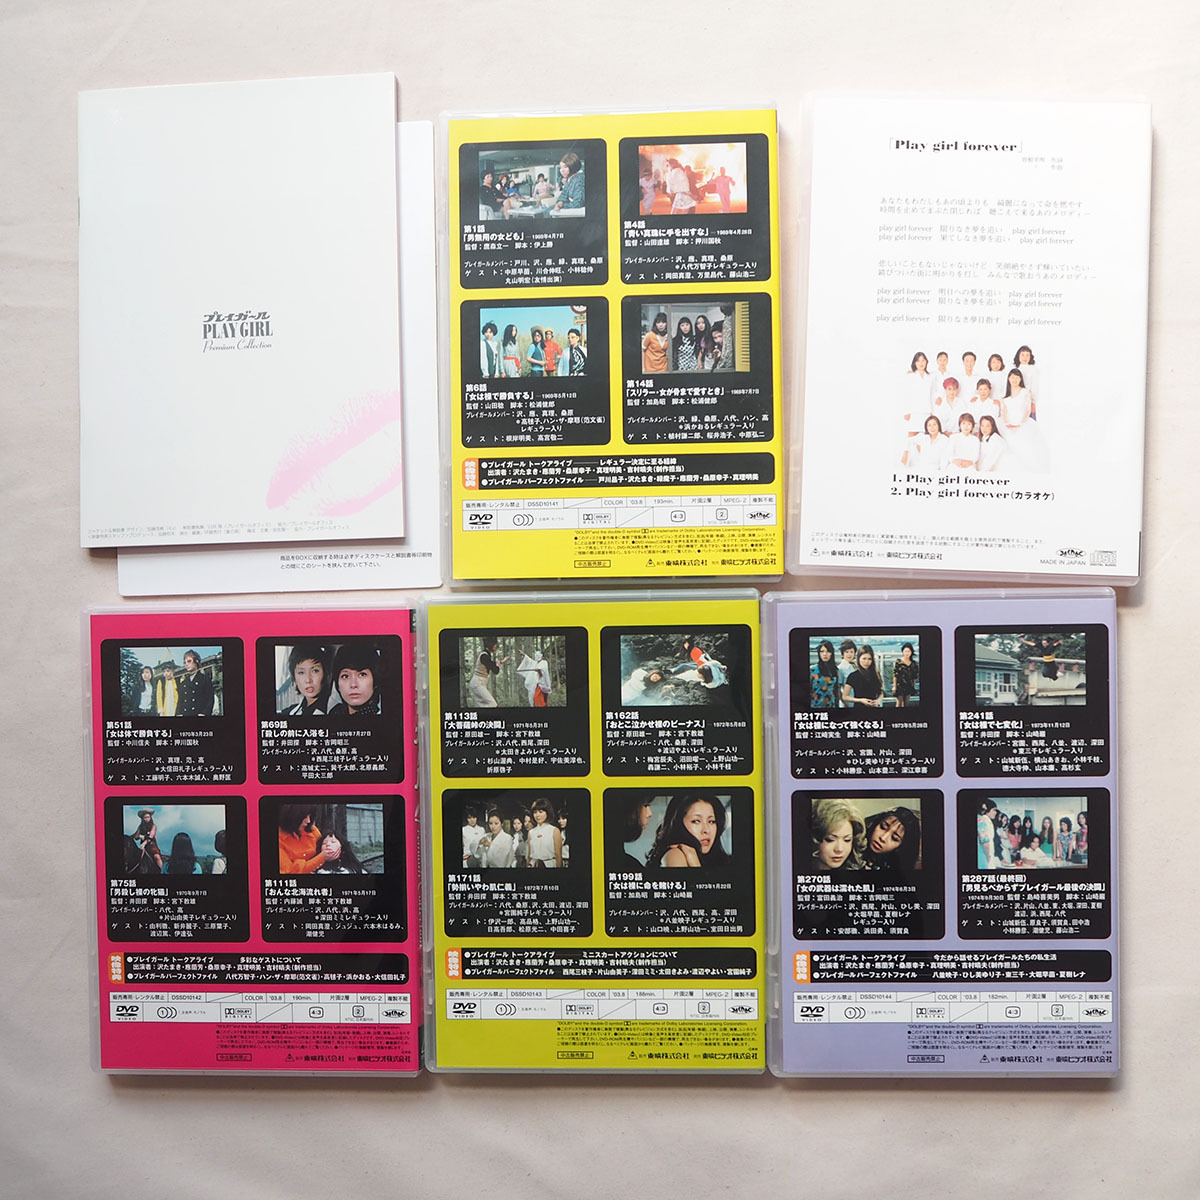 ◆ プレイガール DVD-BOX Premium Collection お色気セクシードラマ 沢たまき 桑原幸子 緑魔子 范文雀 送料無料 ◆の画像3